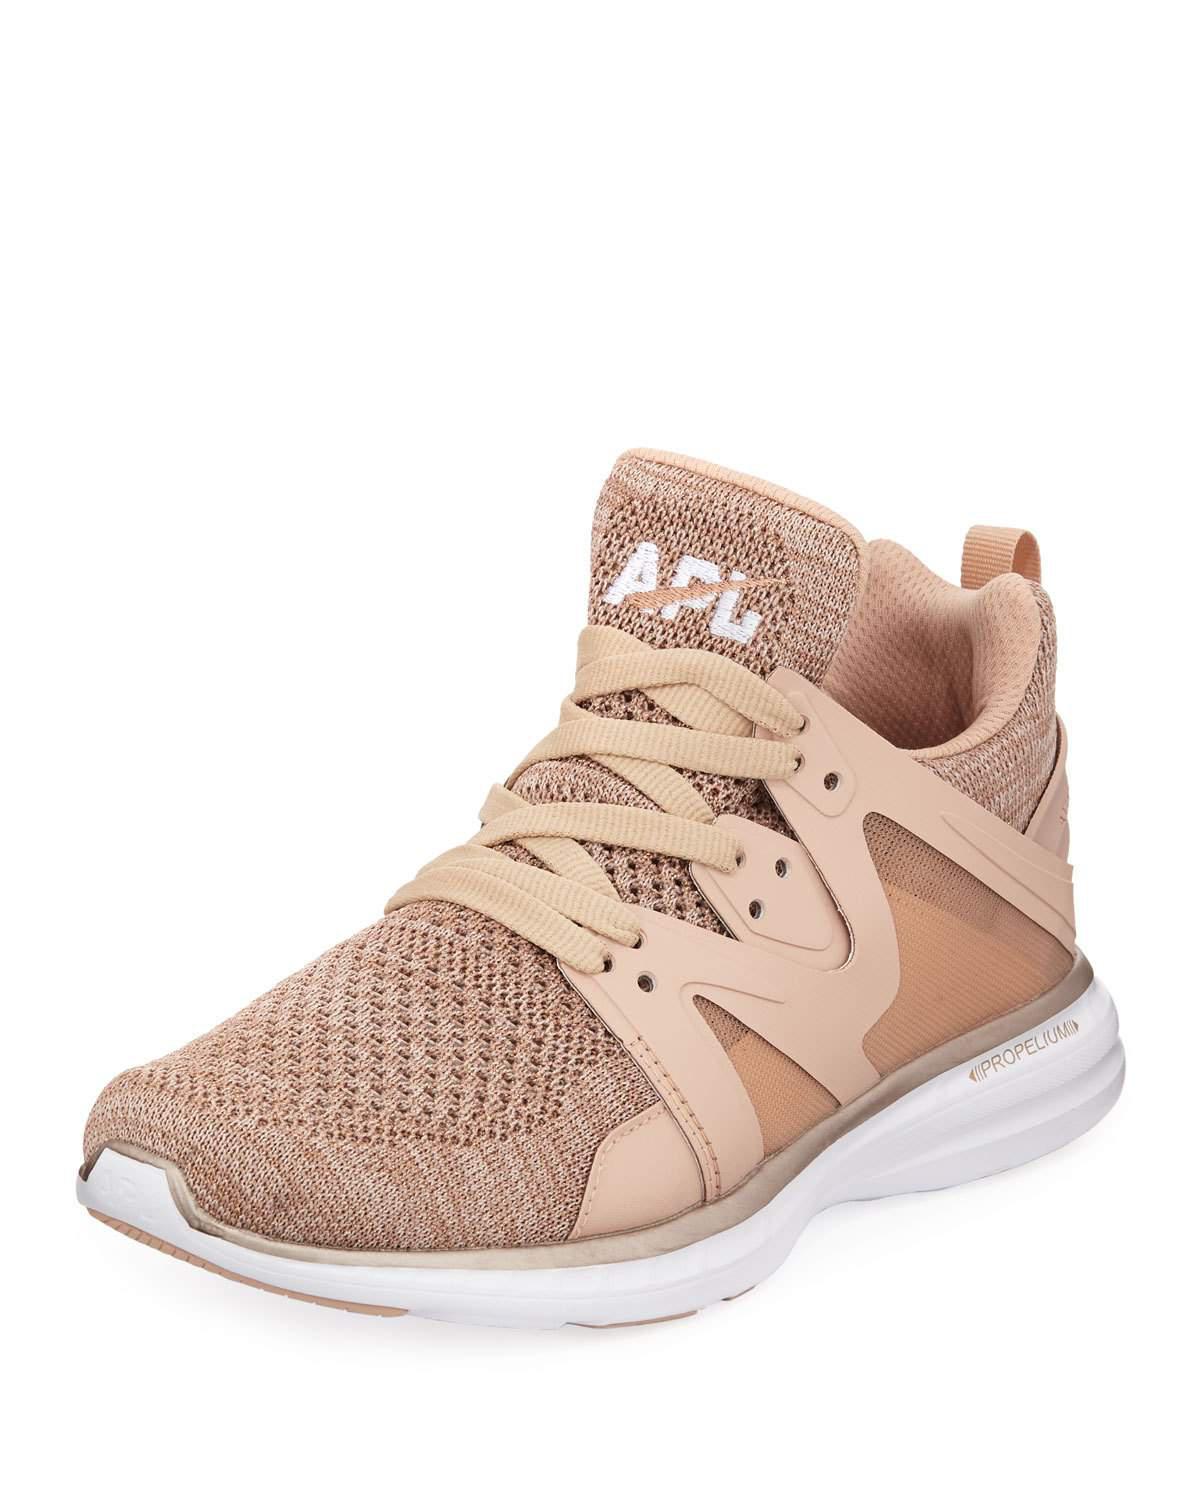 apl rose gold sneakers